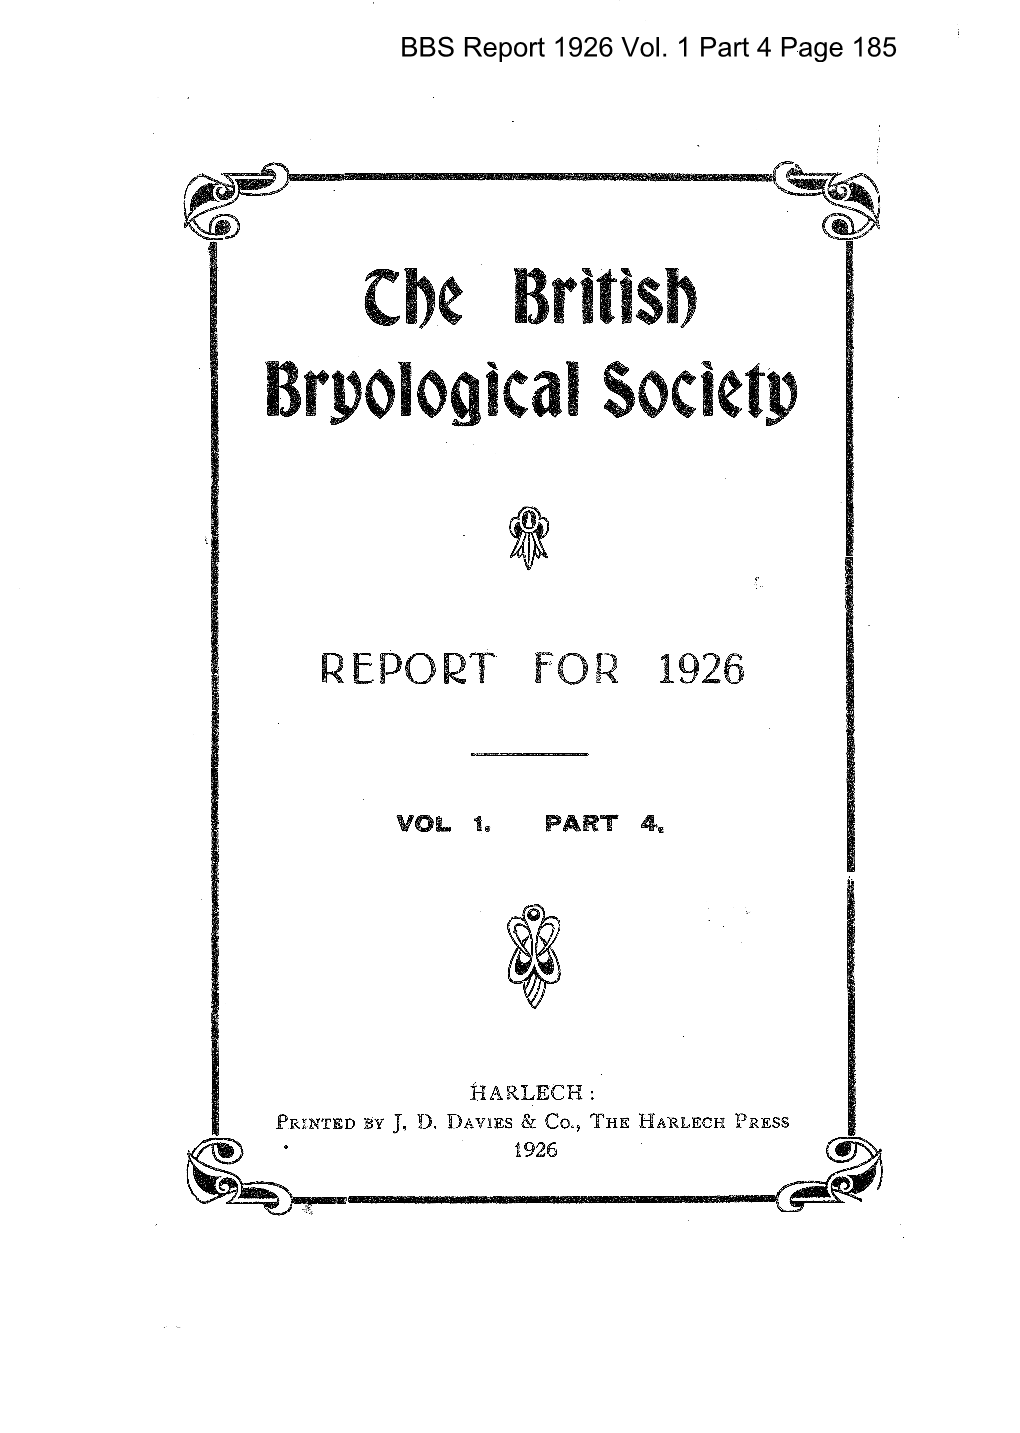 BBS Report Vol.1 Part 4 1926